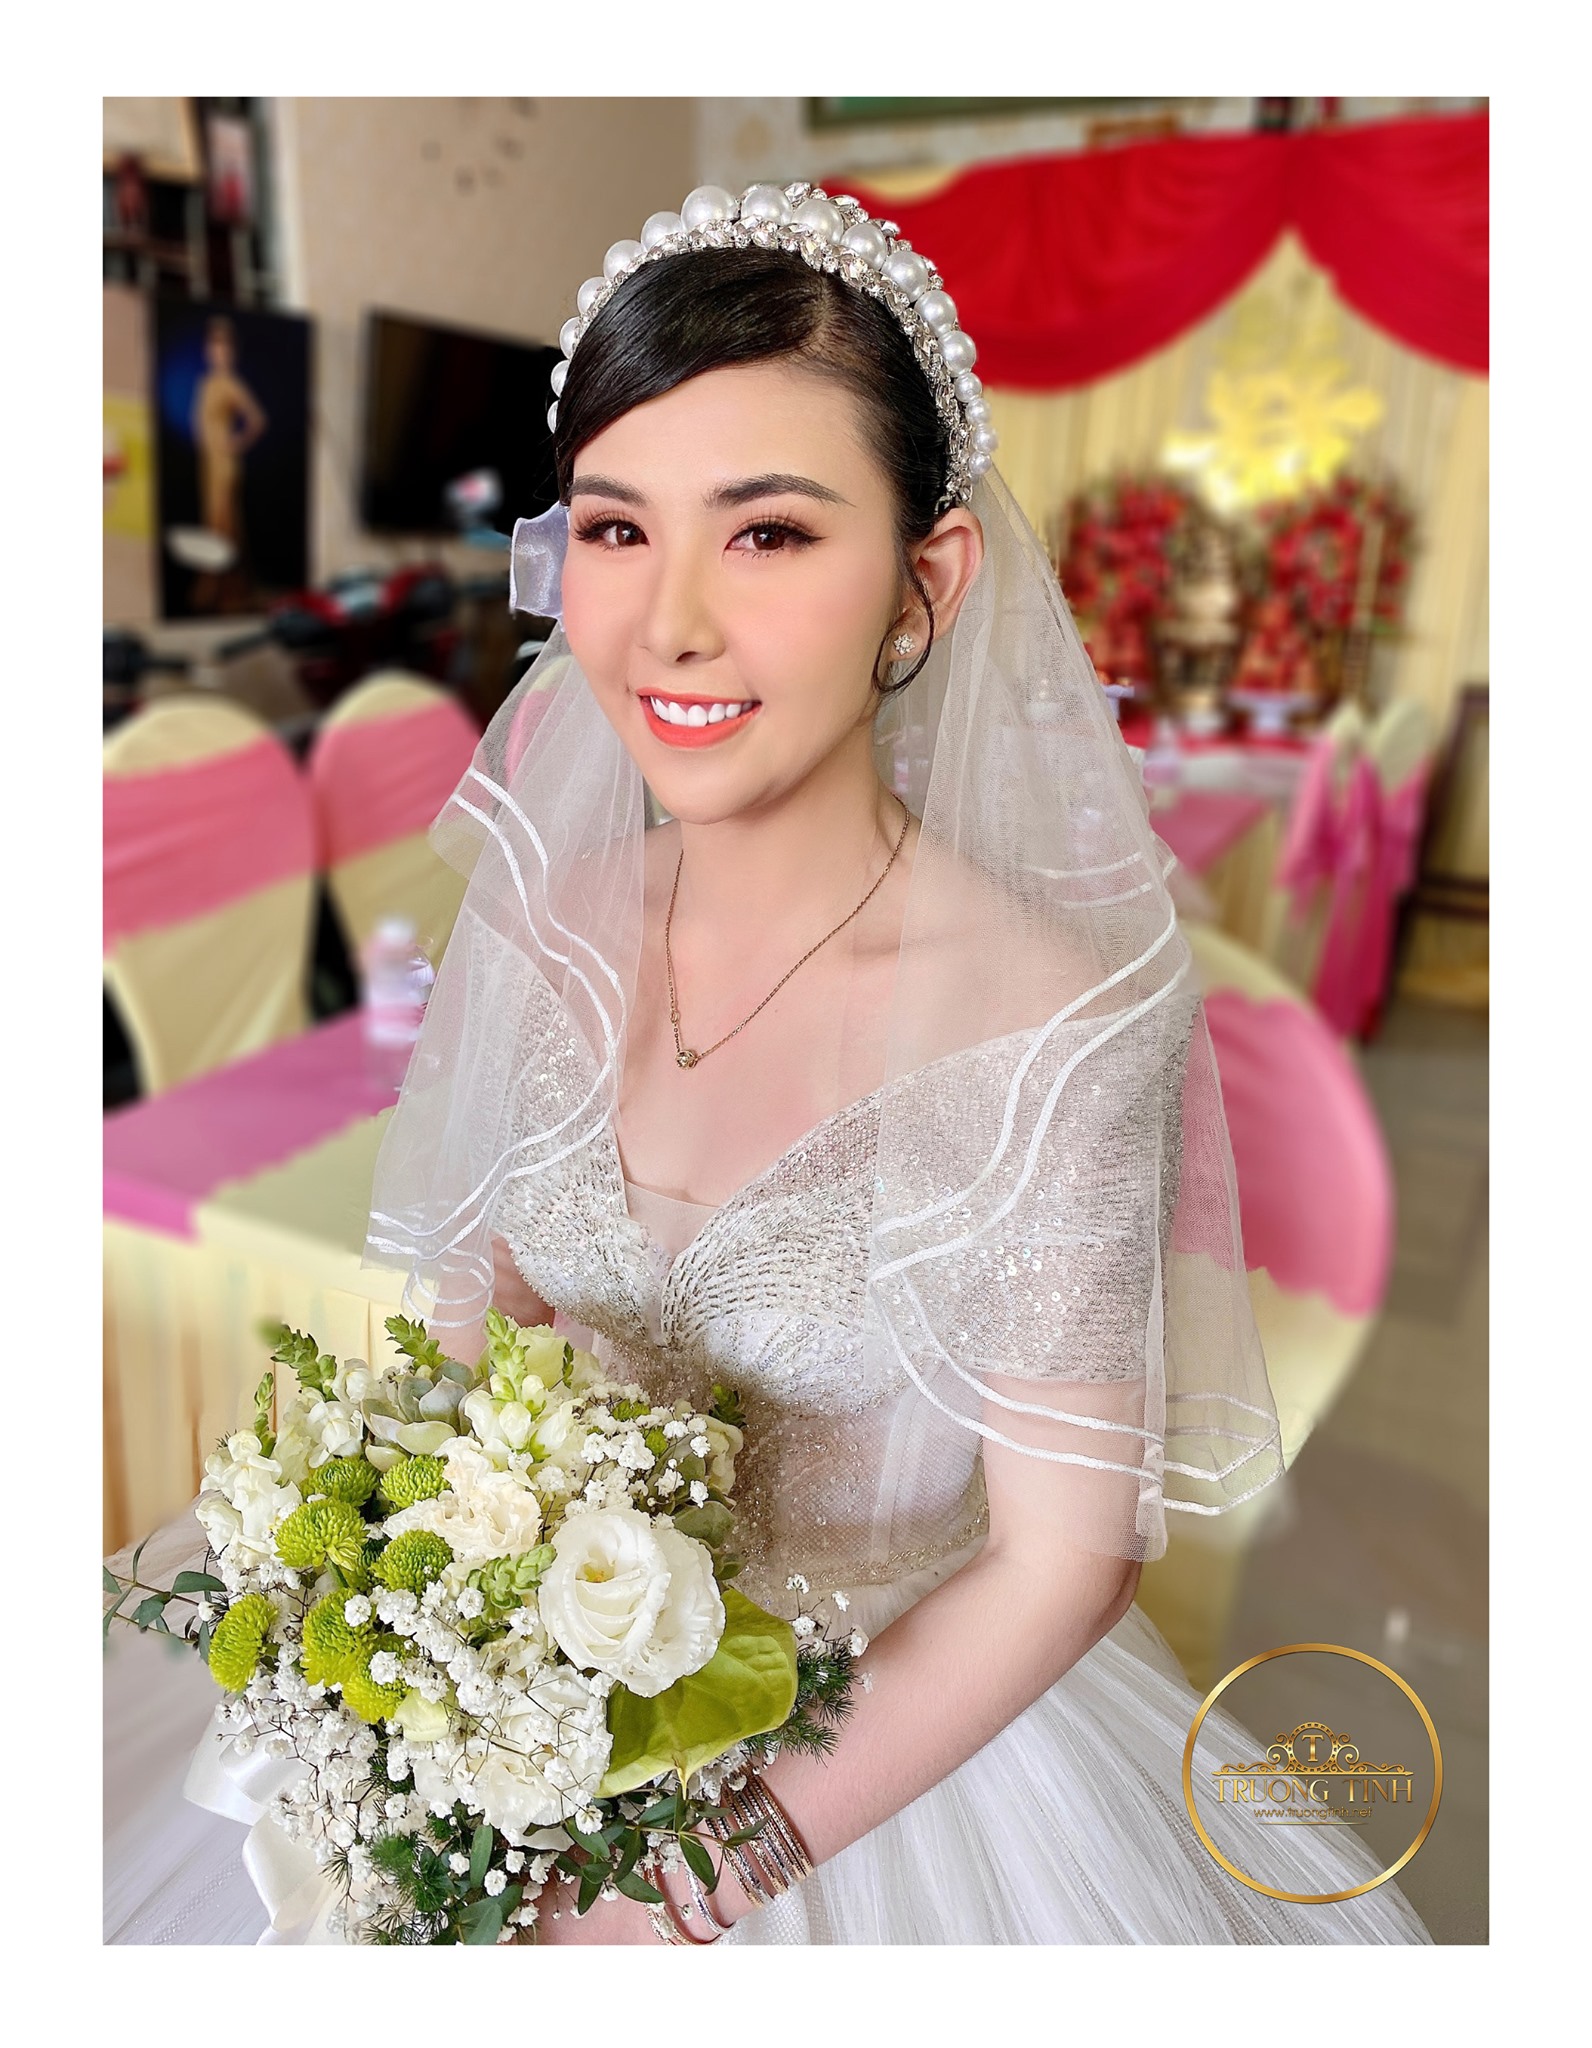 Các phong cách cô dâu siêu ngọt ngào đến từ Trương Tịnh Makeup Artist
